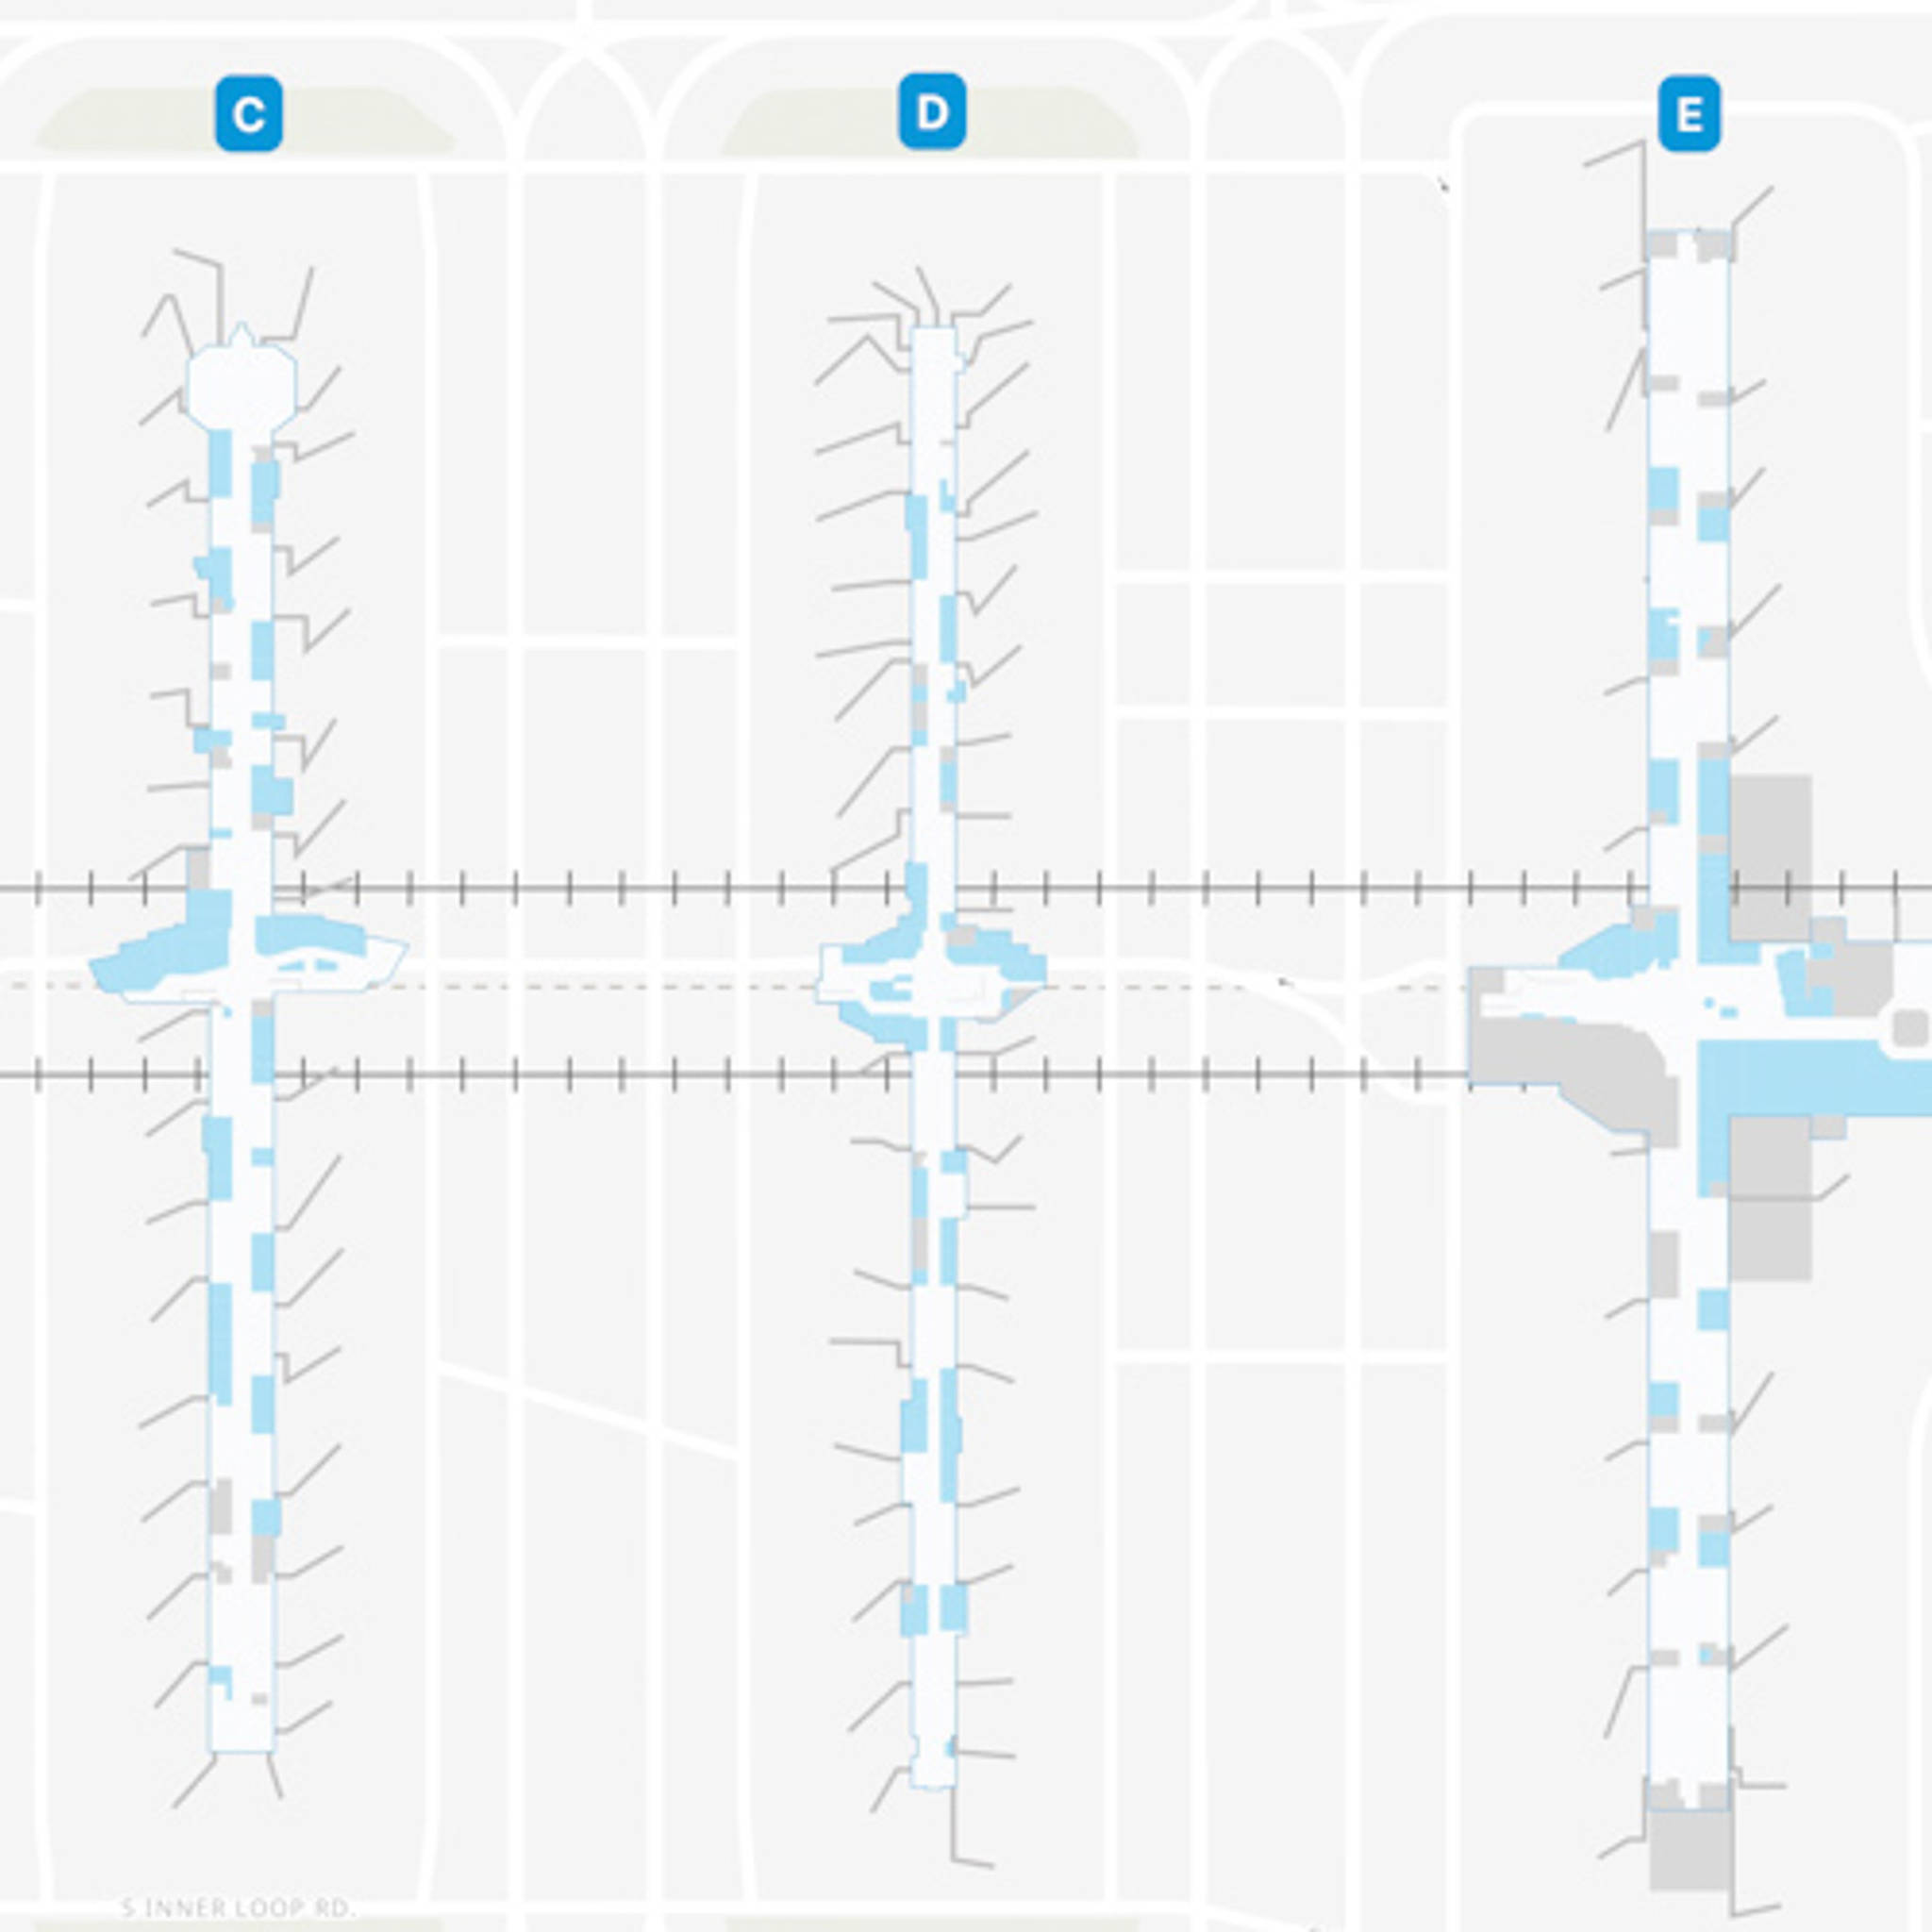 Terminal Map For Atlanta Hartsfield Airport 